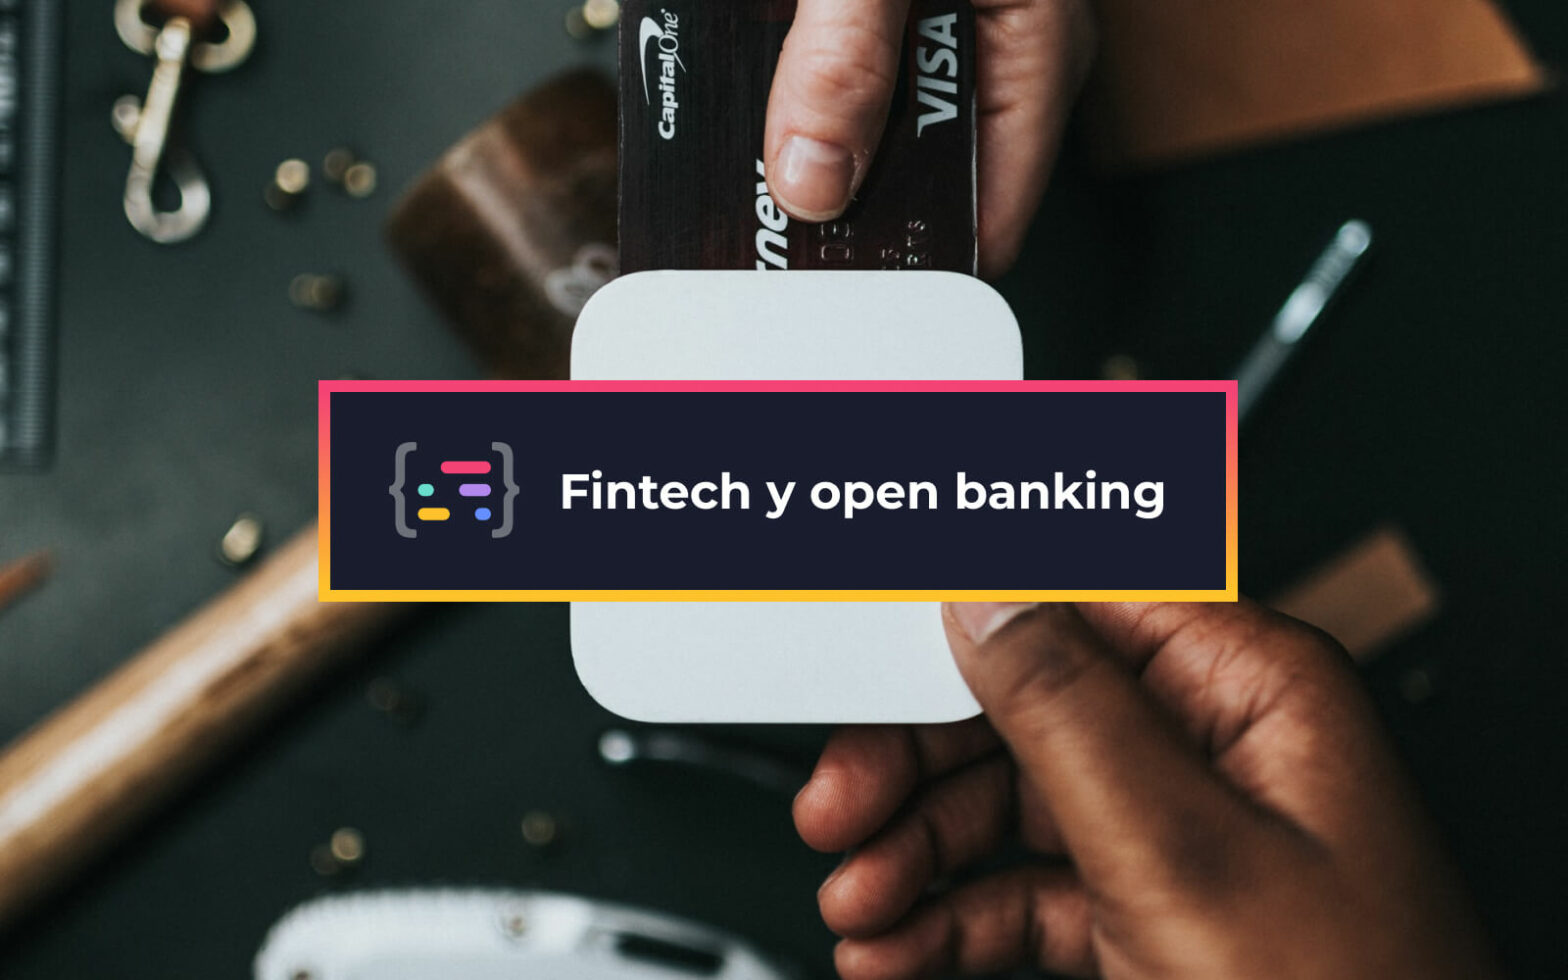 Fintech y open banking